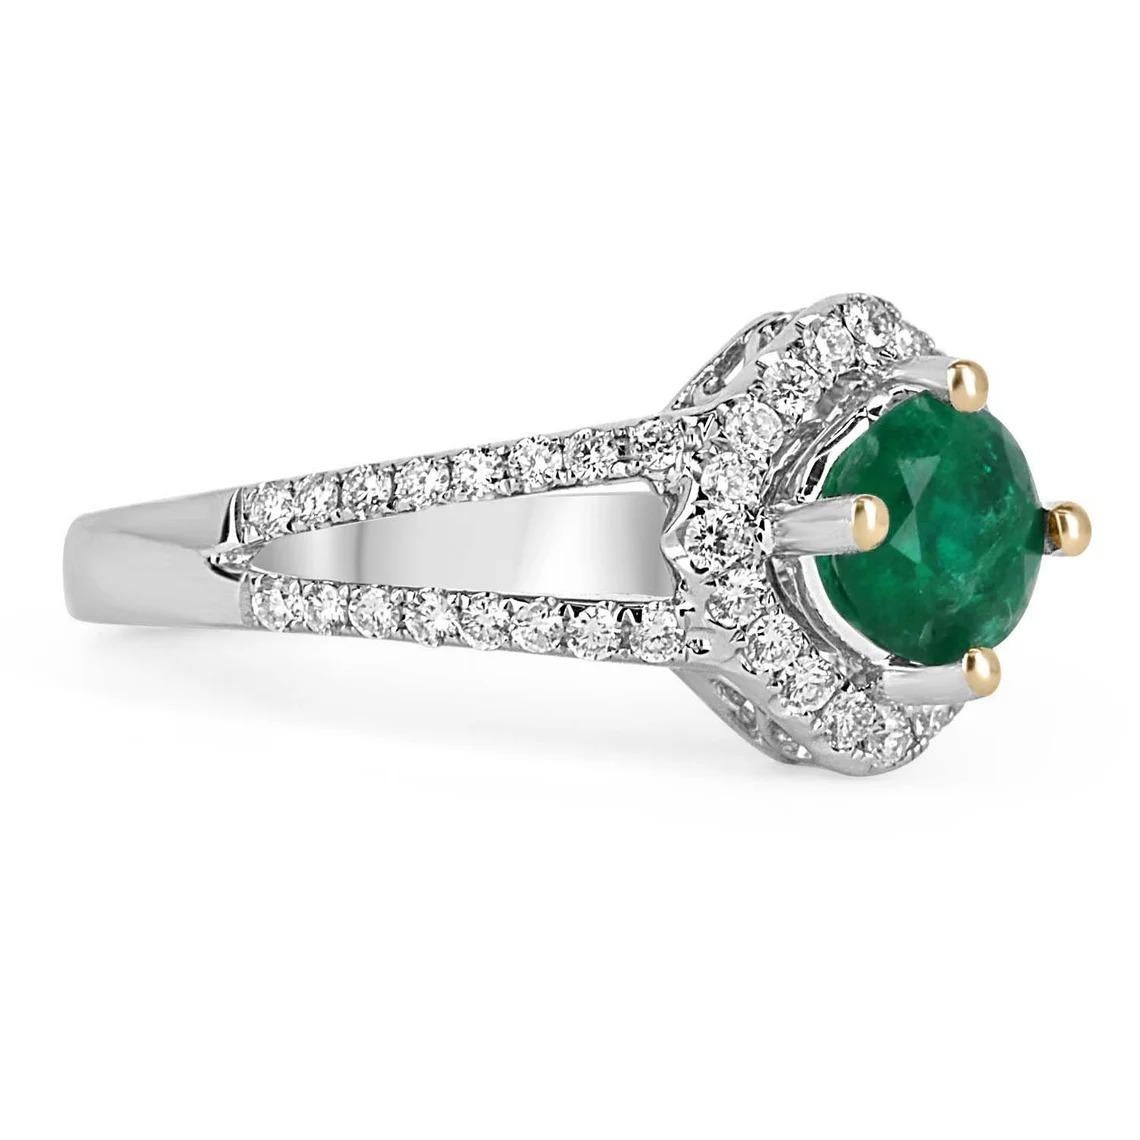 Seien Sie darauf vorbereitet, viele Komplimente für diese Schönheit zu bekommen! Dies ist ein prächtiger 1,34 tcw natürlicher kolumbianischer Smaragd und Diamant Split Shank Verlobungsring. Dies ist ein perfekter Statement-Ring mit einem prächtigen